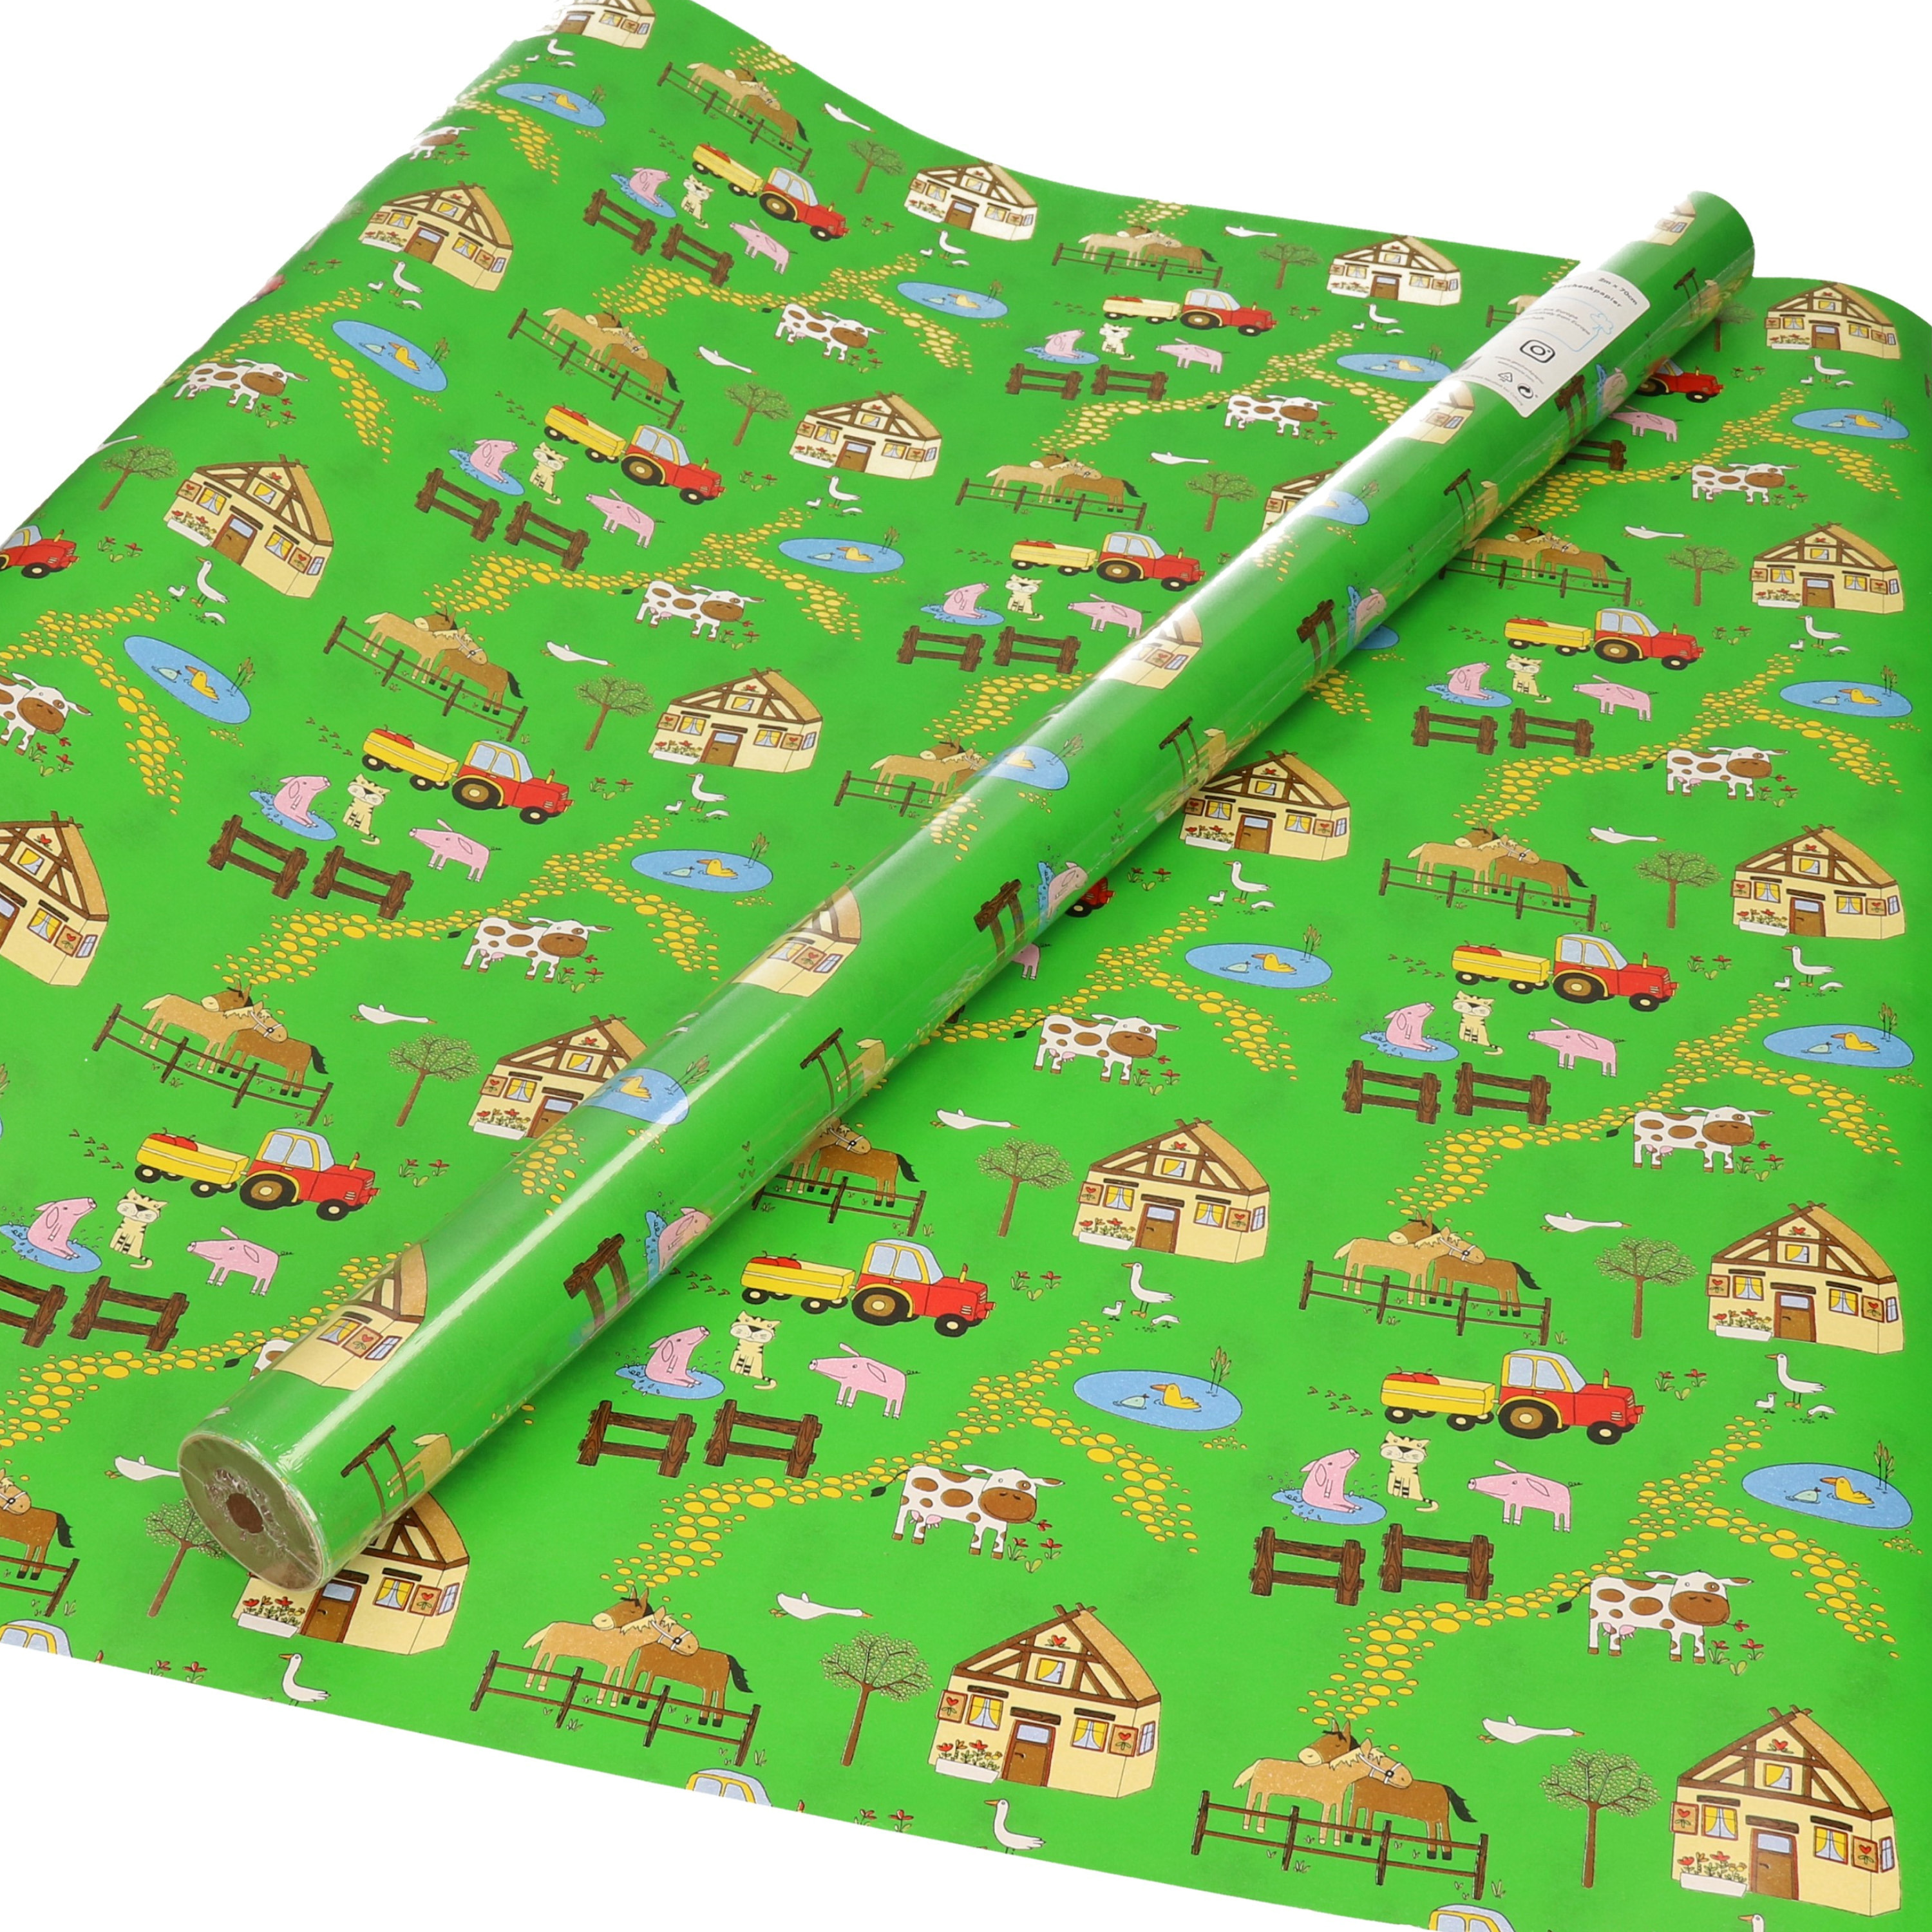 1x Inpakpapier / cadeaupapier groen met boerderij thema 200 x 70 - cadeaupapier boerderij dieren